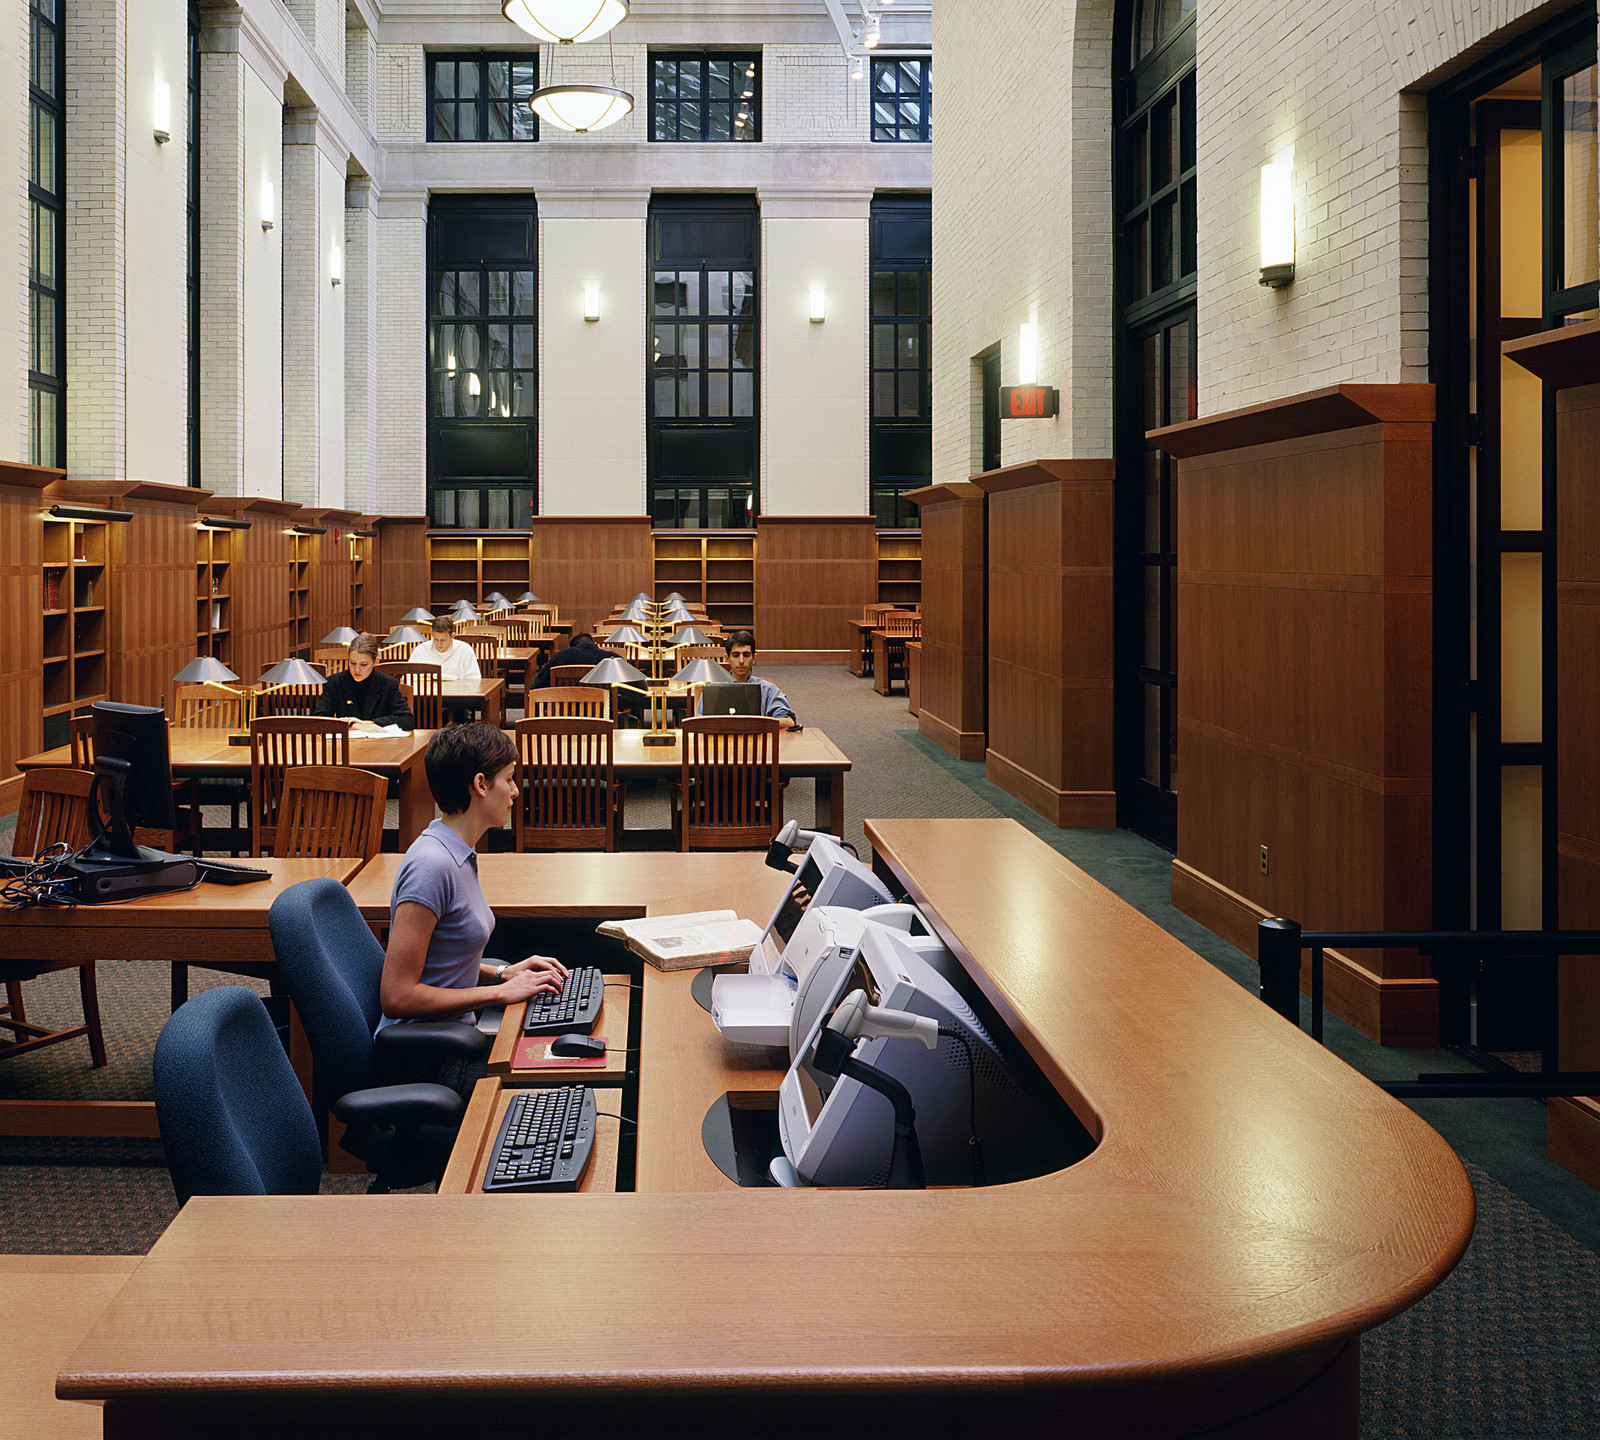 Custom reception desk at the Widener Library at Harvard University